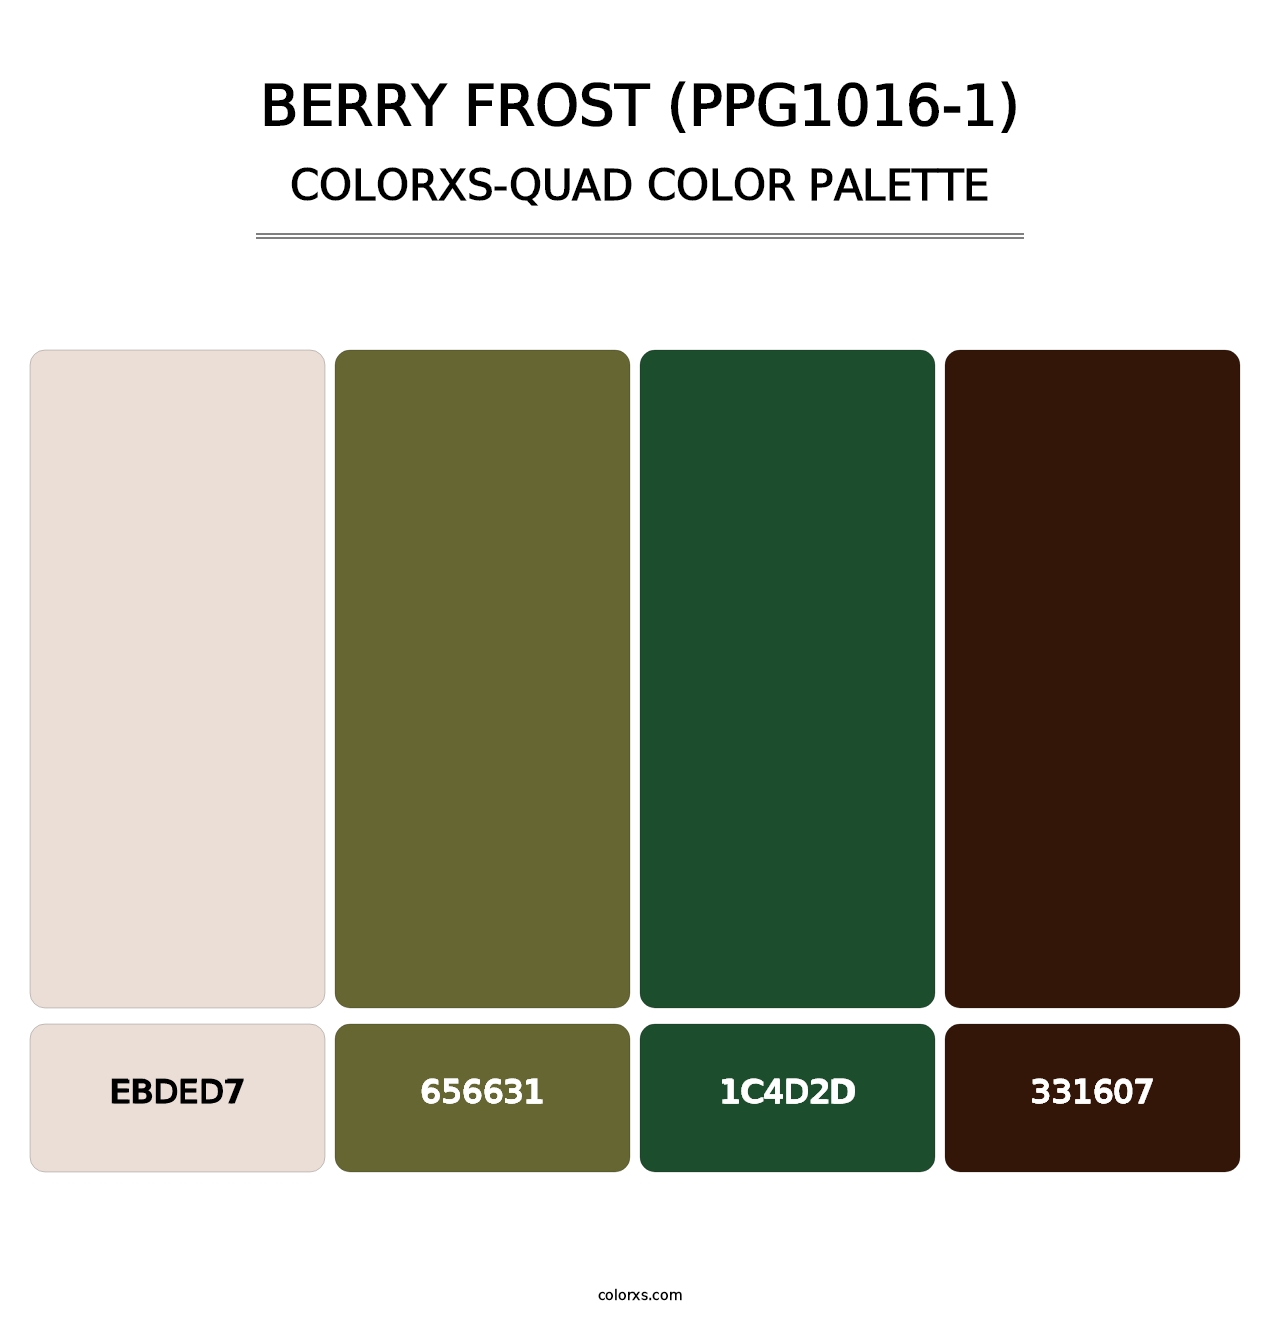 Berry Frost (PPG1016-1) - Colorxs Quad Palette